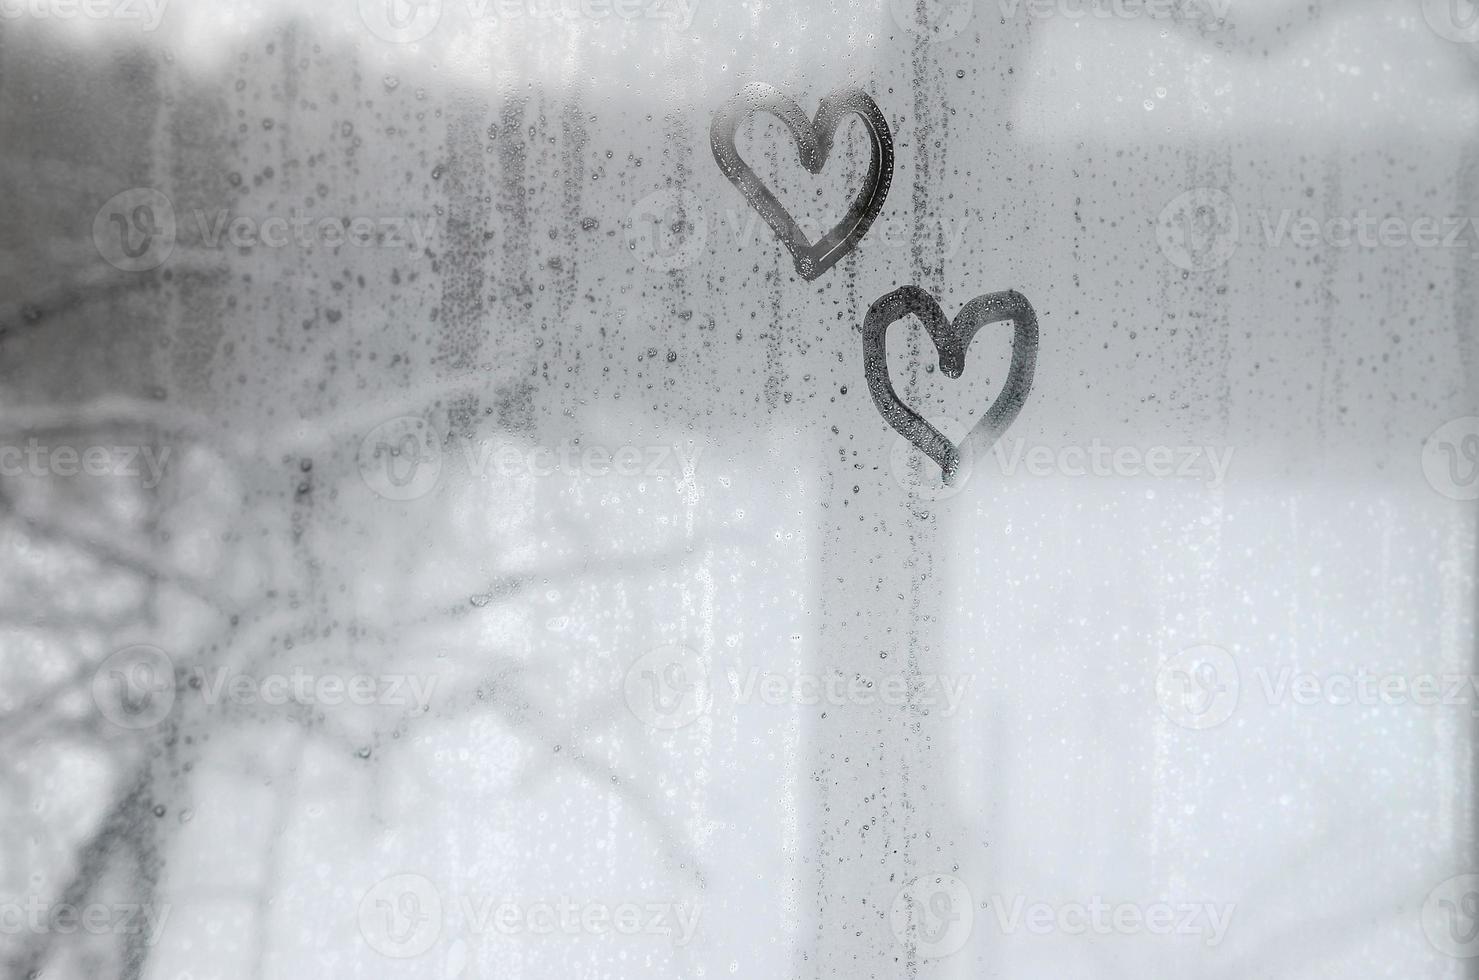 dos corazones pintados en un vidrio empañado en invierno foto